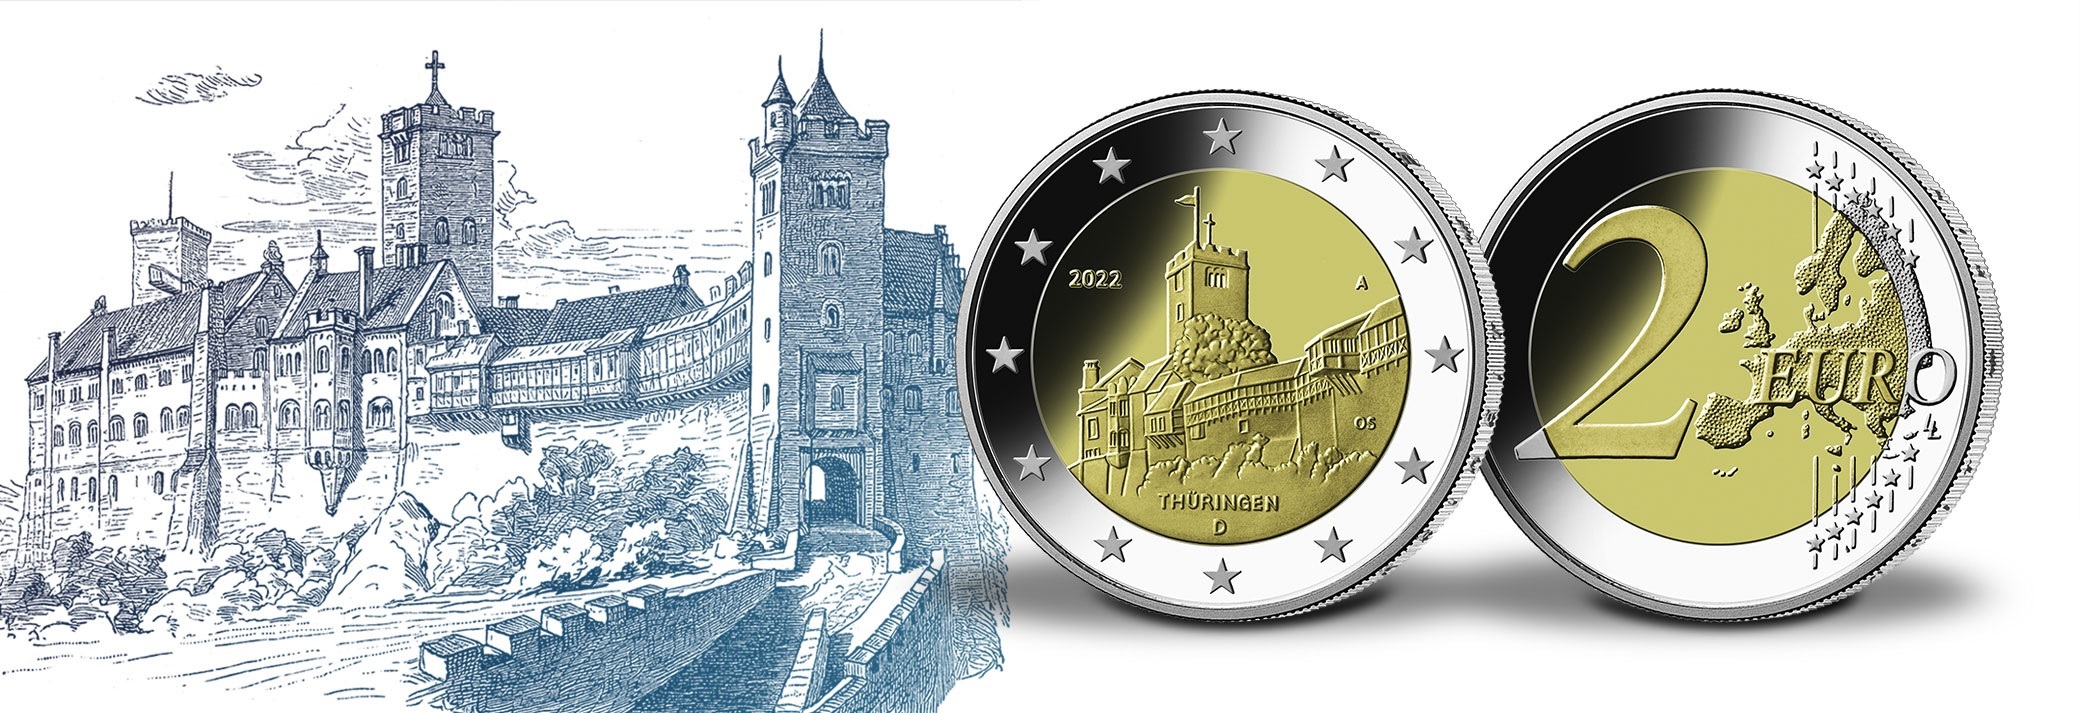 (EUR03.BU.set.2022.90gd22n) Coin set 2 € Germany 2022 BU - Wartburg Castle ( blog illustration) (zoom)